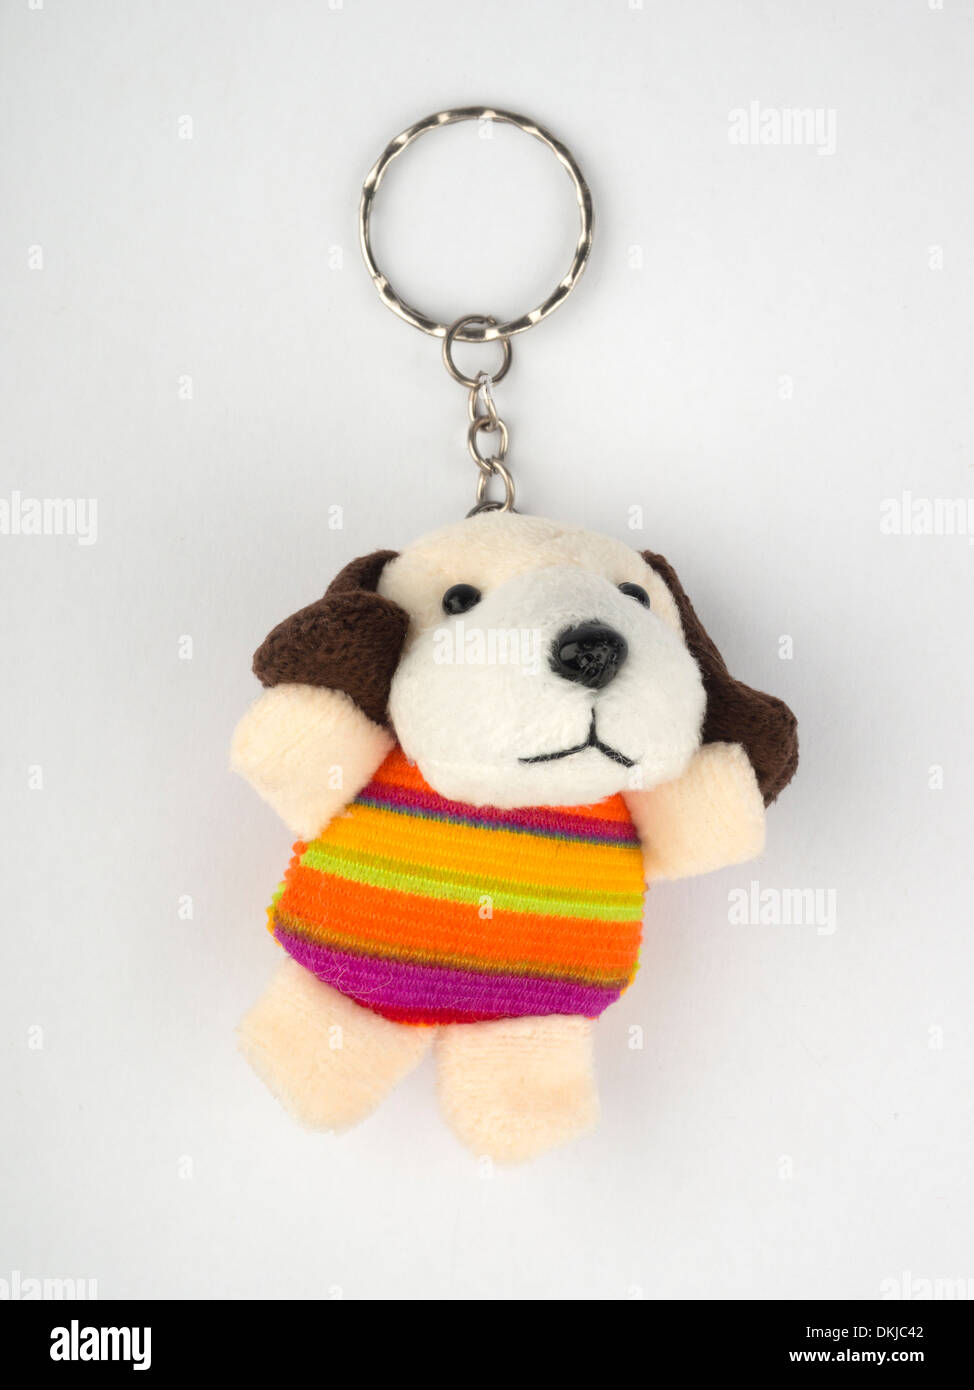 Cute plush toy dog keyring Stock Photo